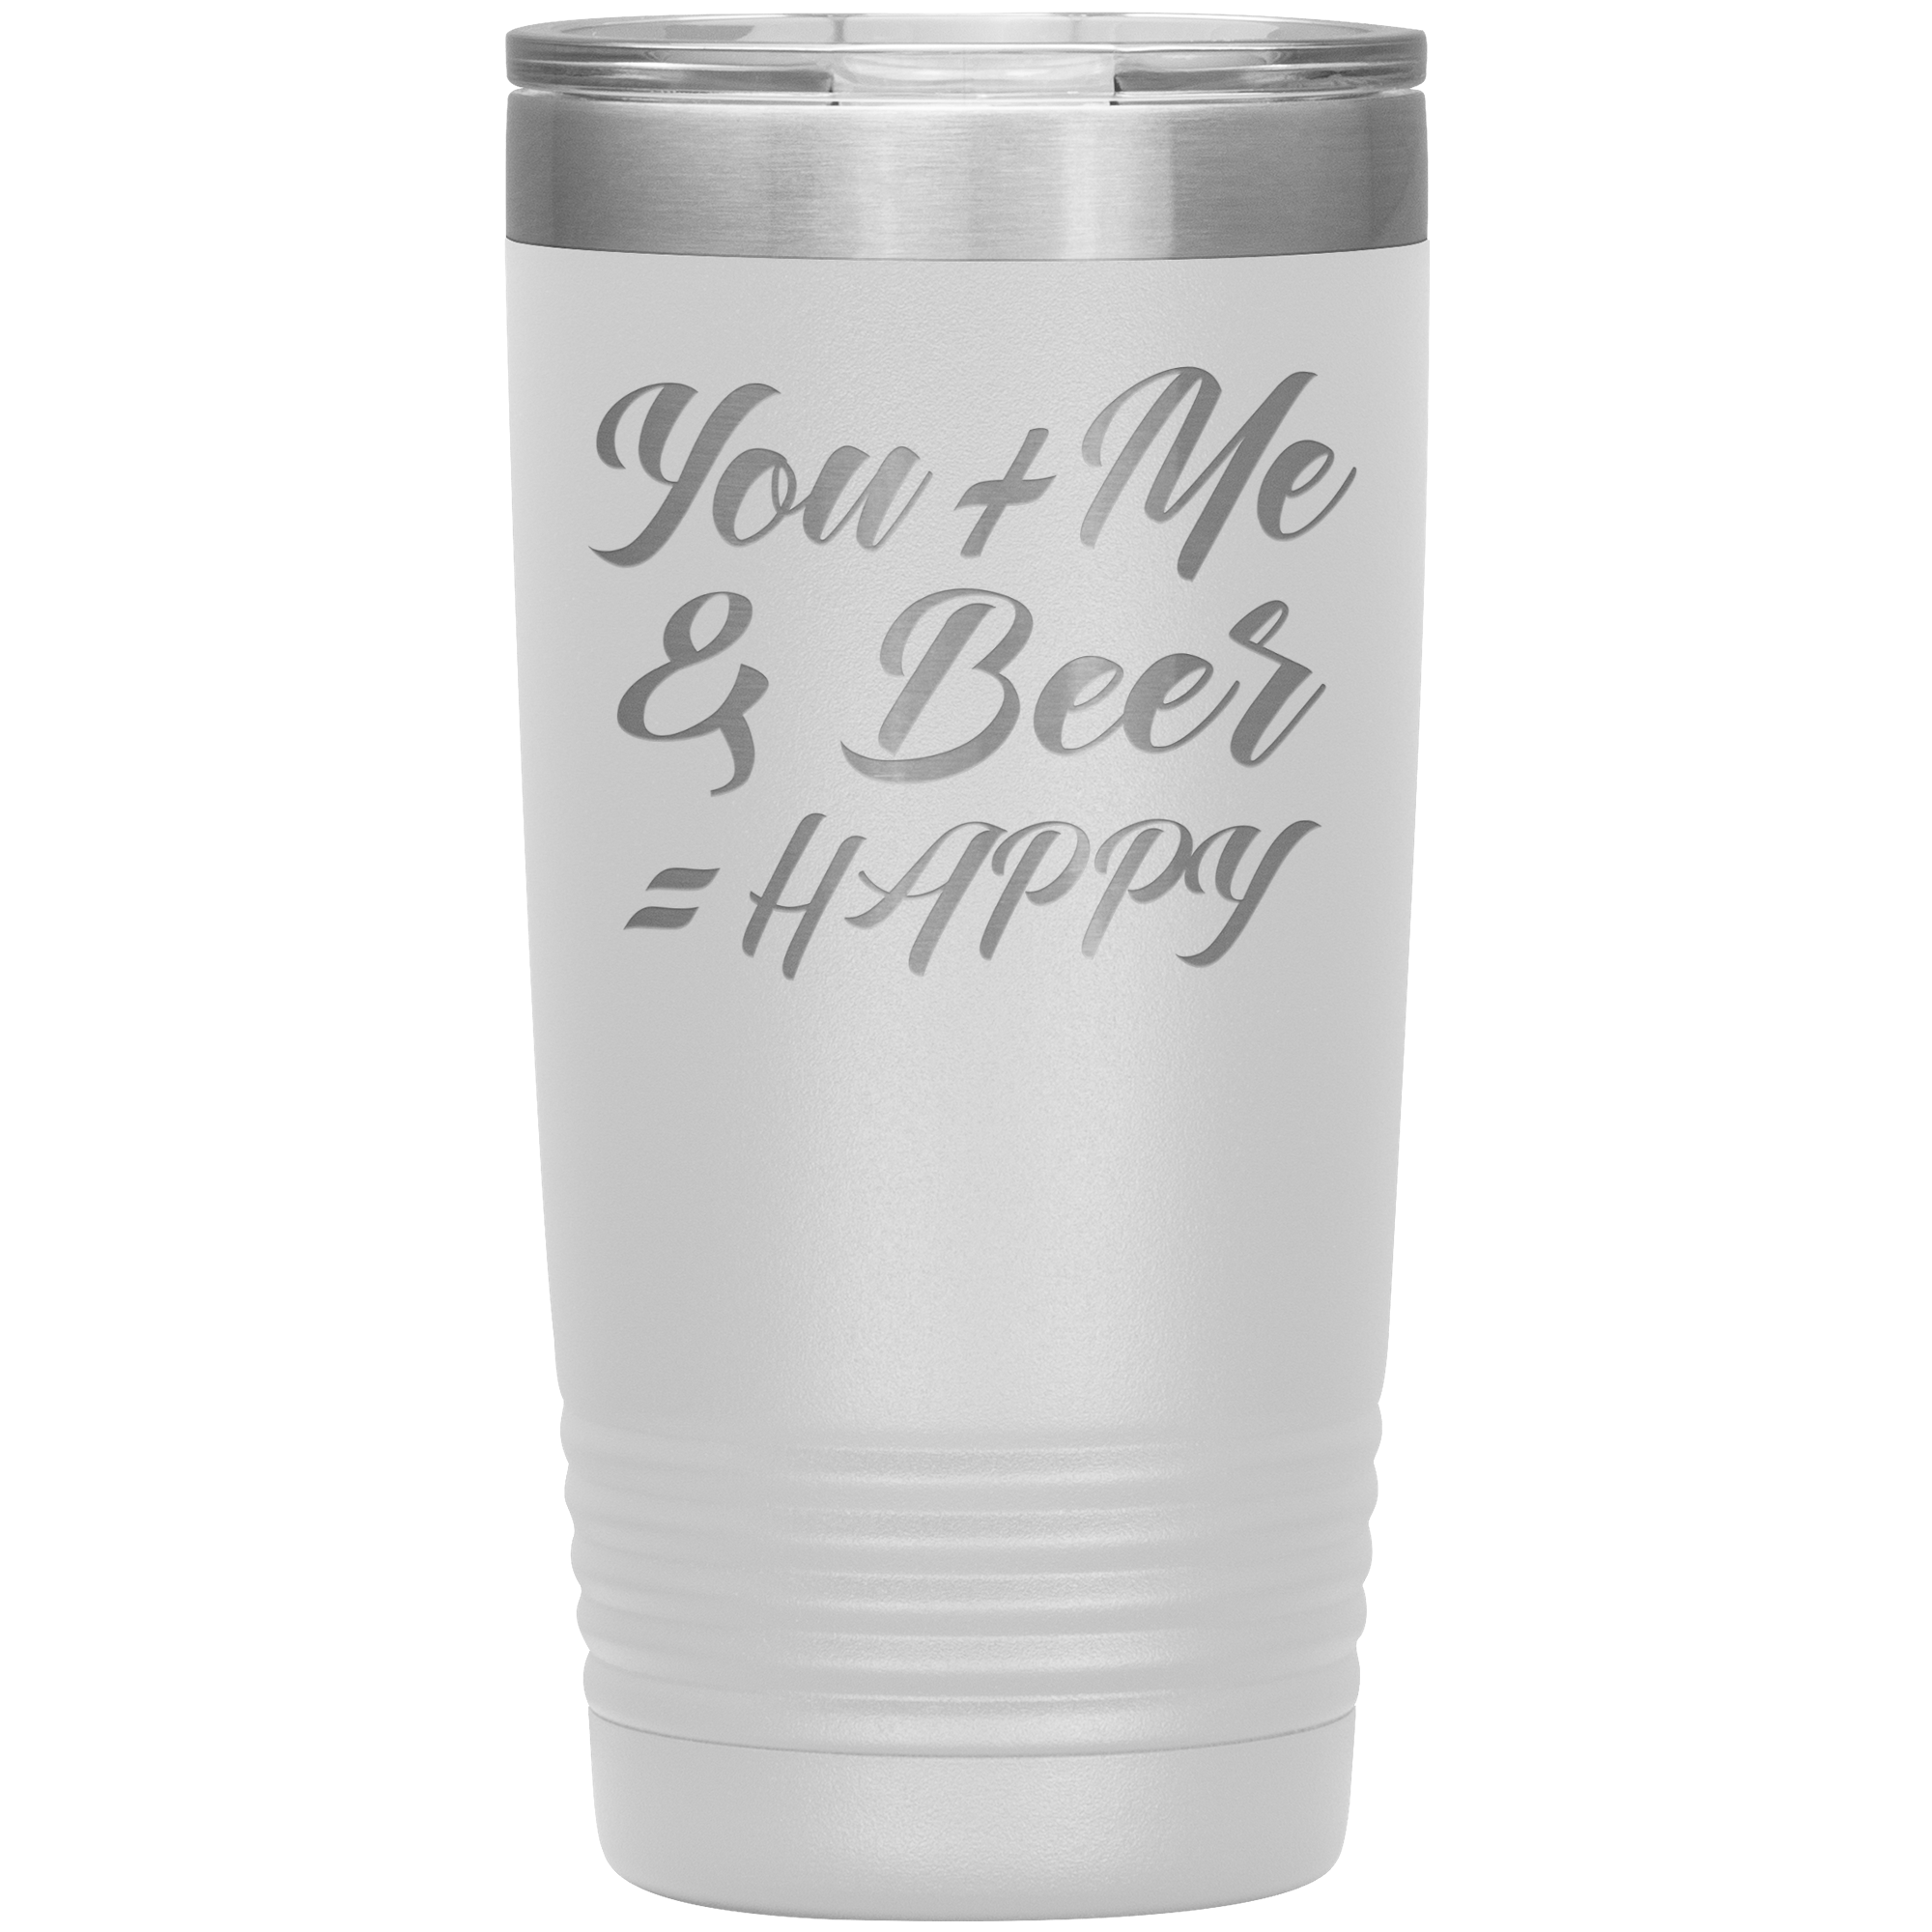 "YOU + ME & BEER = HAPPY"TUMBLER